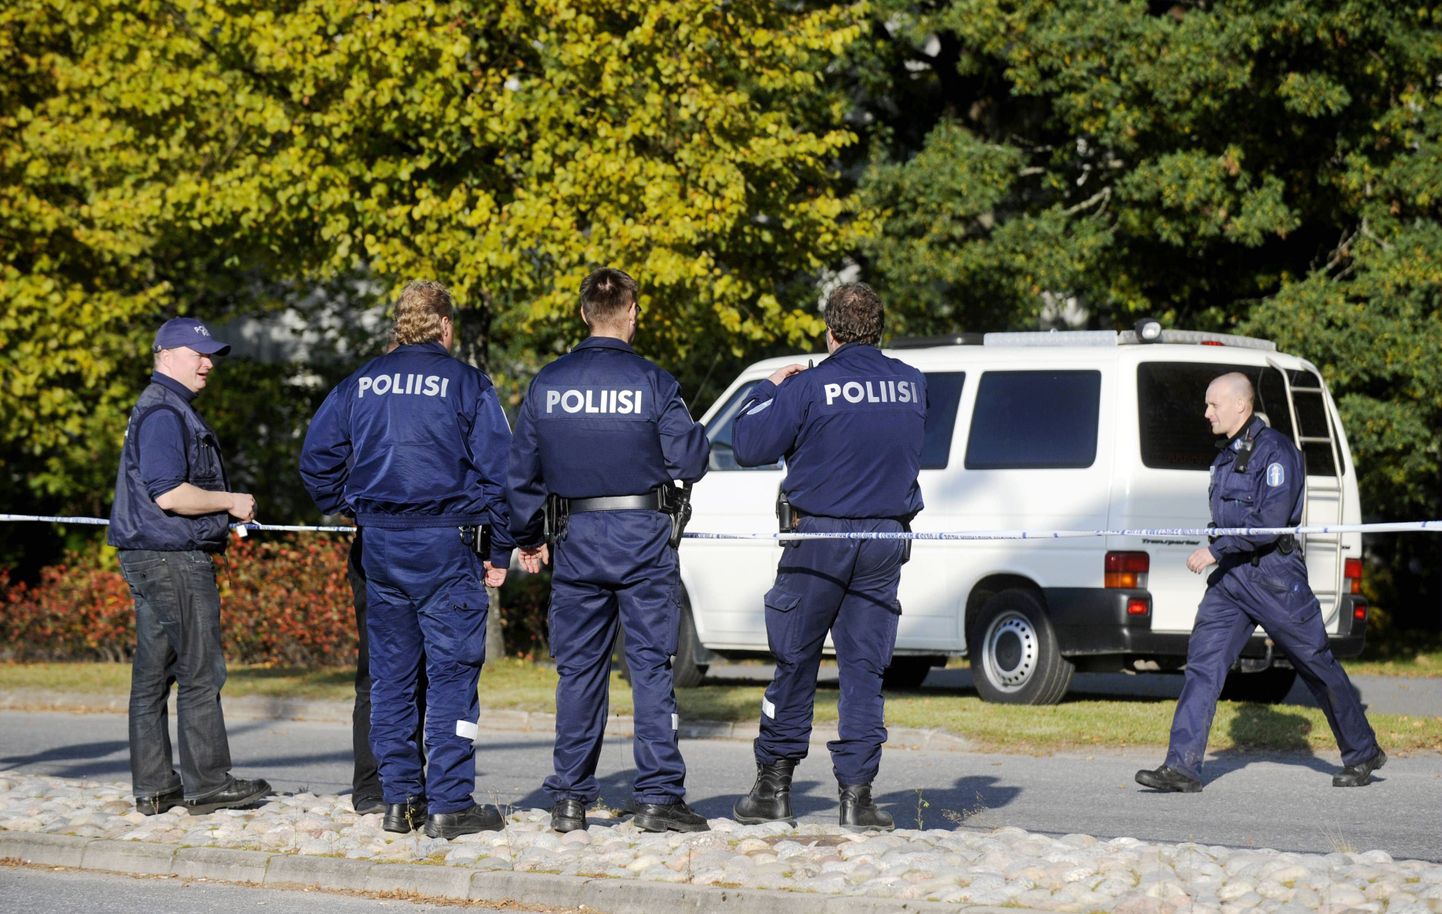 Soome politsei. Foto on illustratiivne